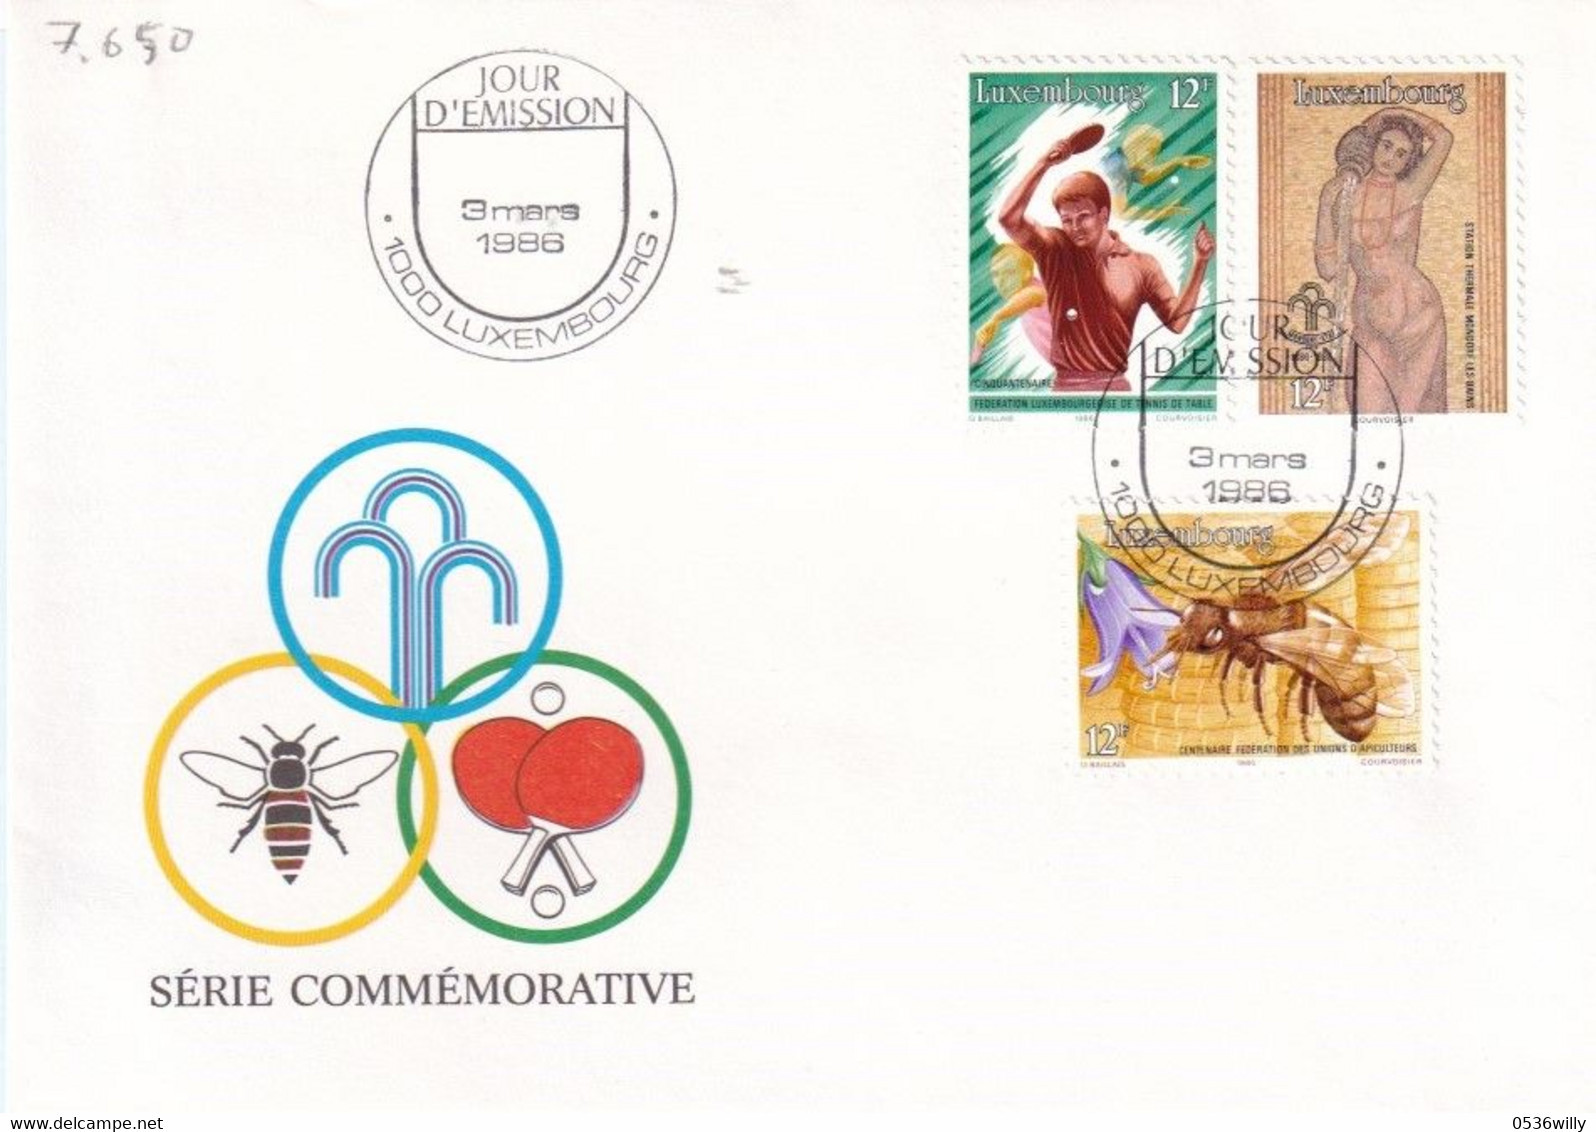 Luxembourg 1986 - FDC Jahresereignisse (7.650) - Briefe U. Dokumente